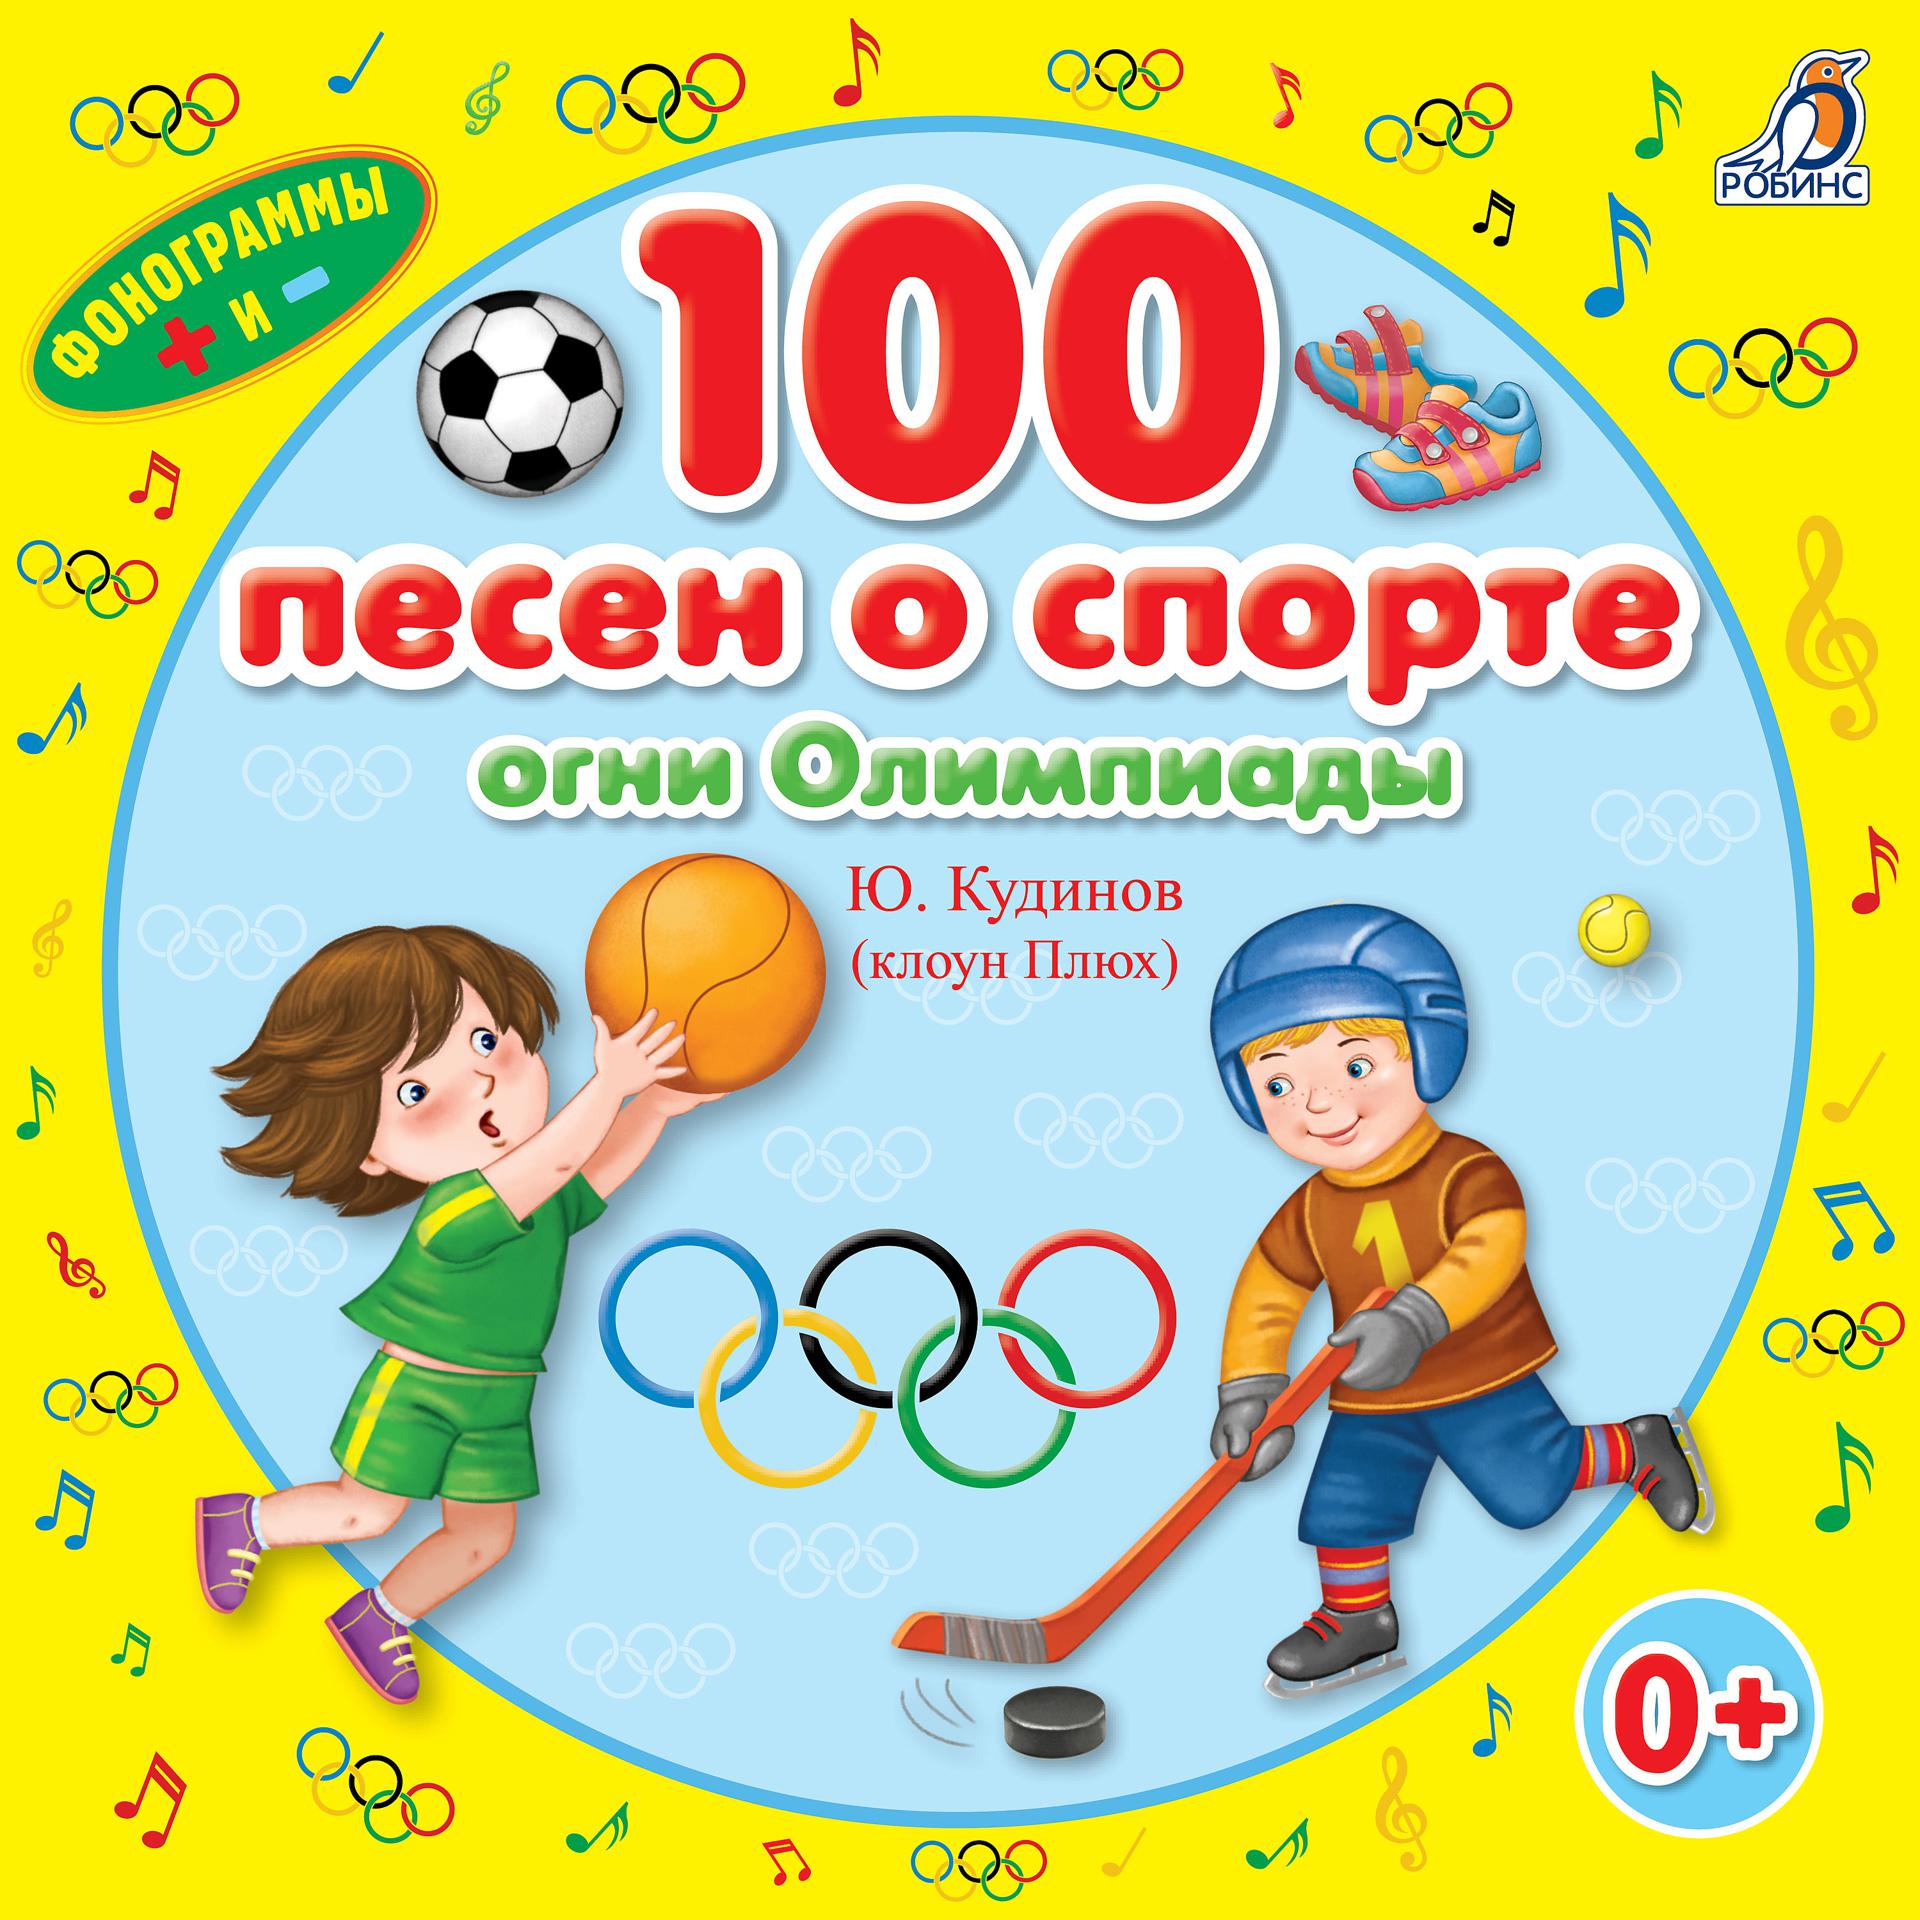 Клоун плюх текст. Книги о спорте для детей. Детские книги про спорт. Детская книга о спорте. Песня про спорт.